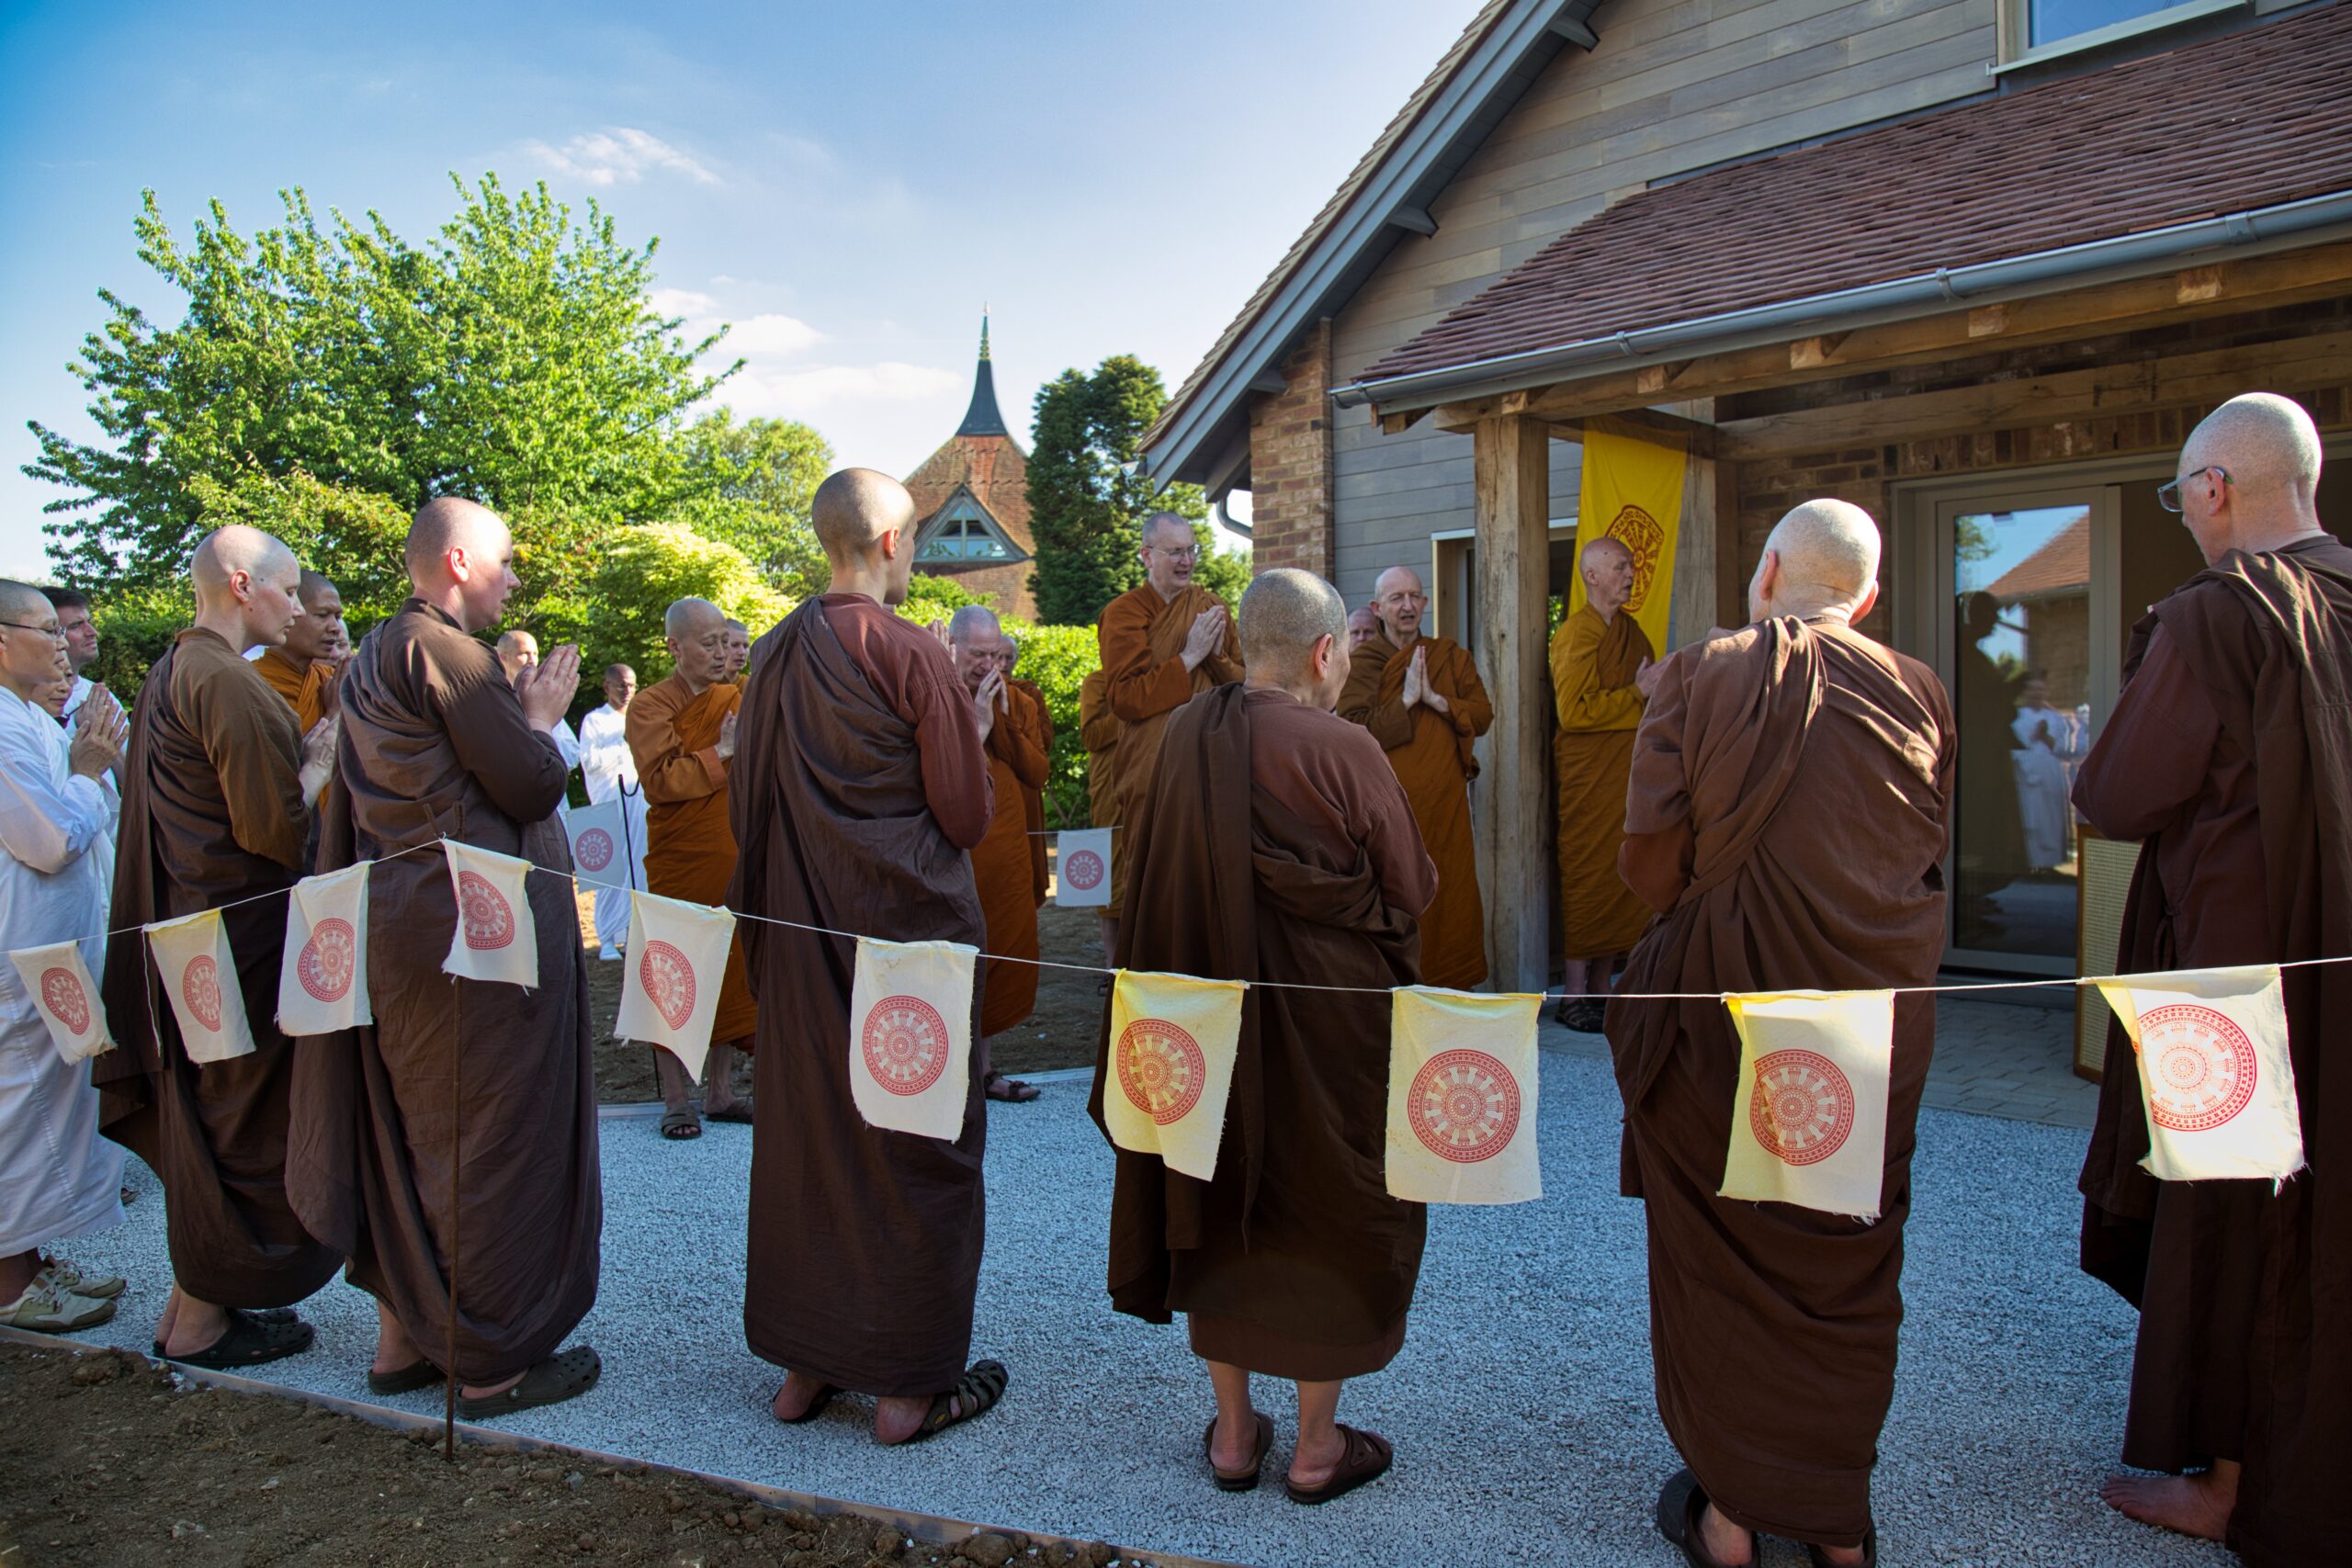 Monastery Opening Times 2022 Latest Update Amaravati Buddhist Monastery